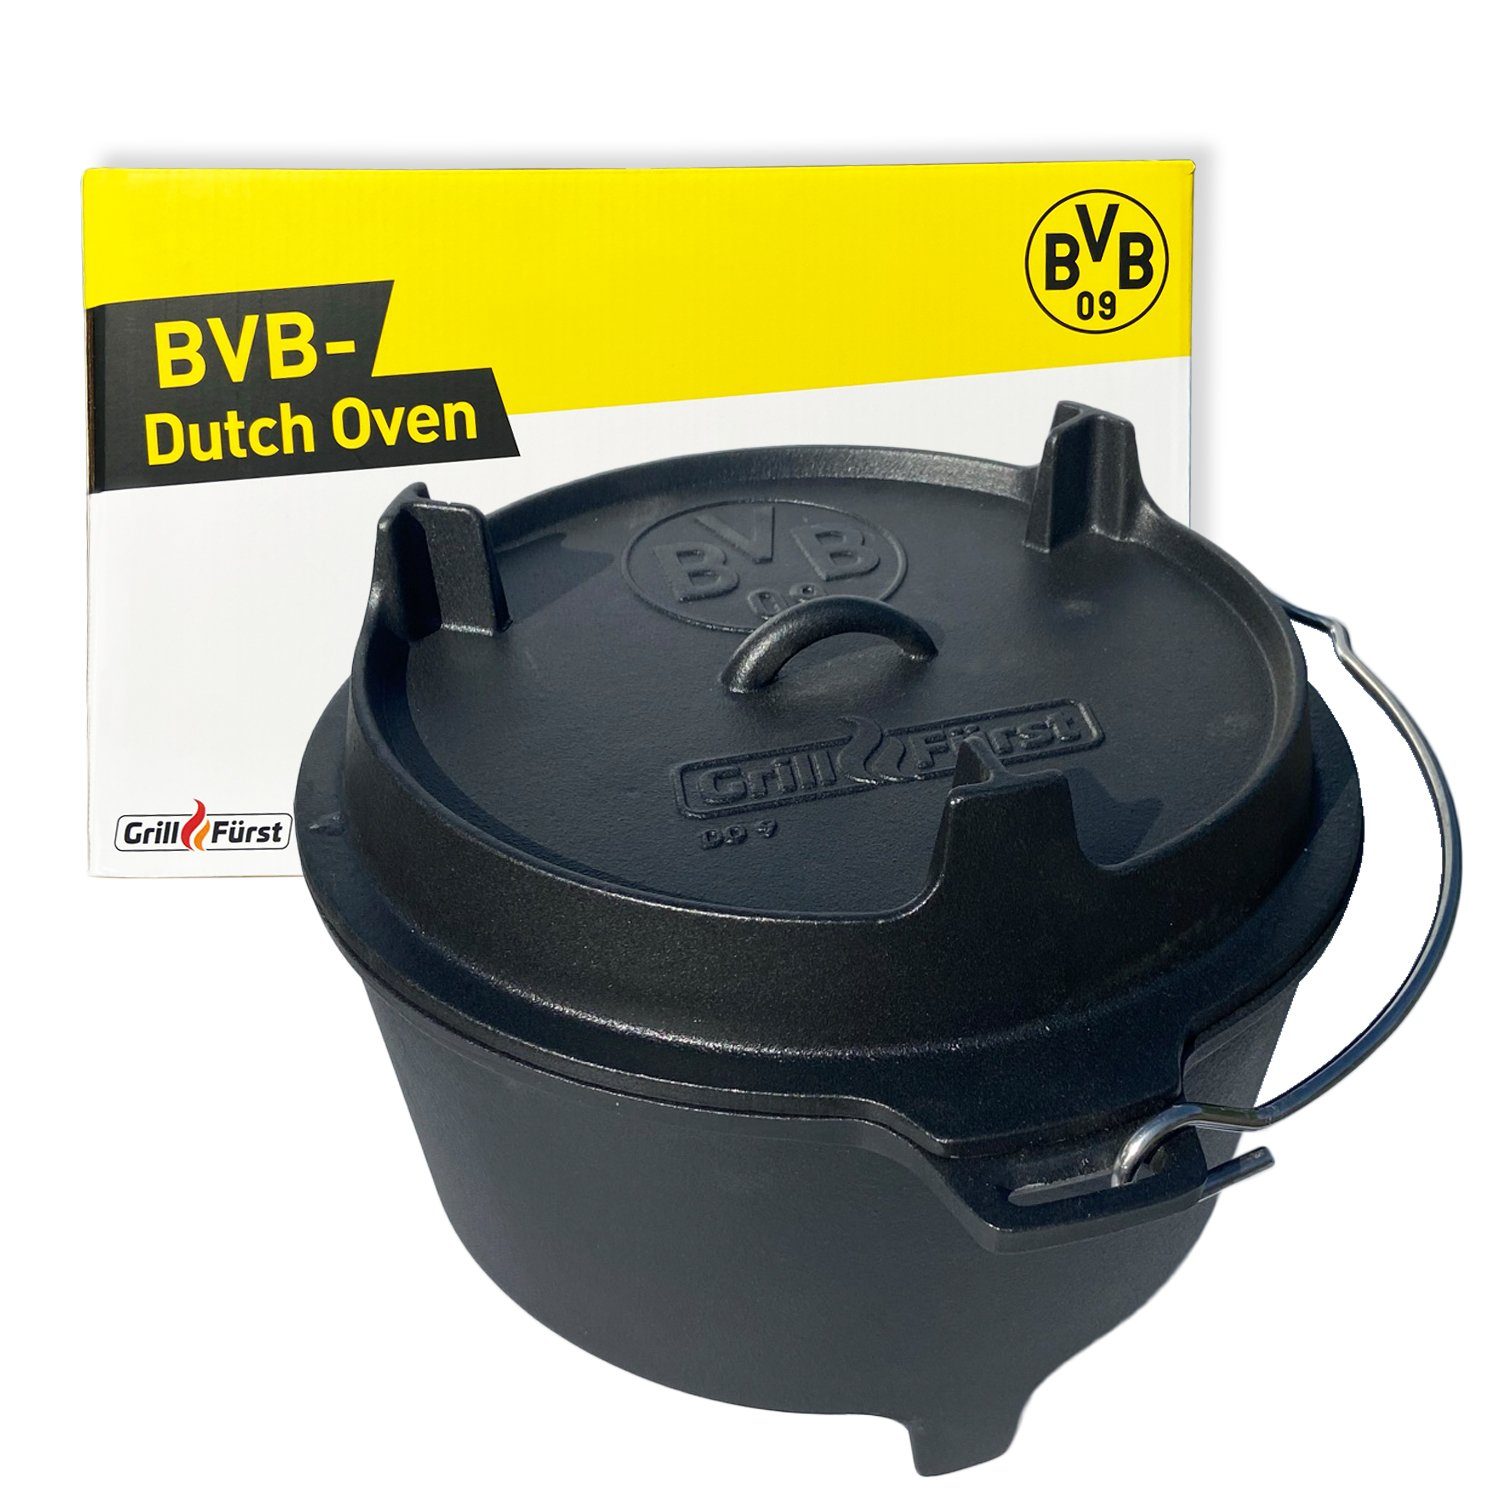 Grillfürst Bratentopf Grillfürst Dutch Oven BBQ Edition DO9 - Borussia Dortmund Edition